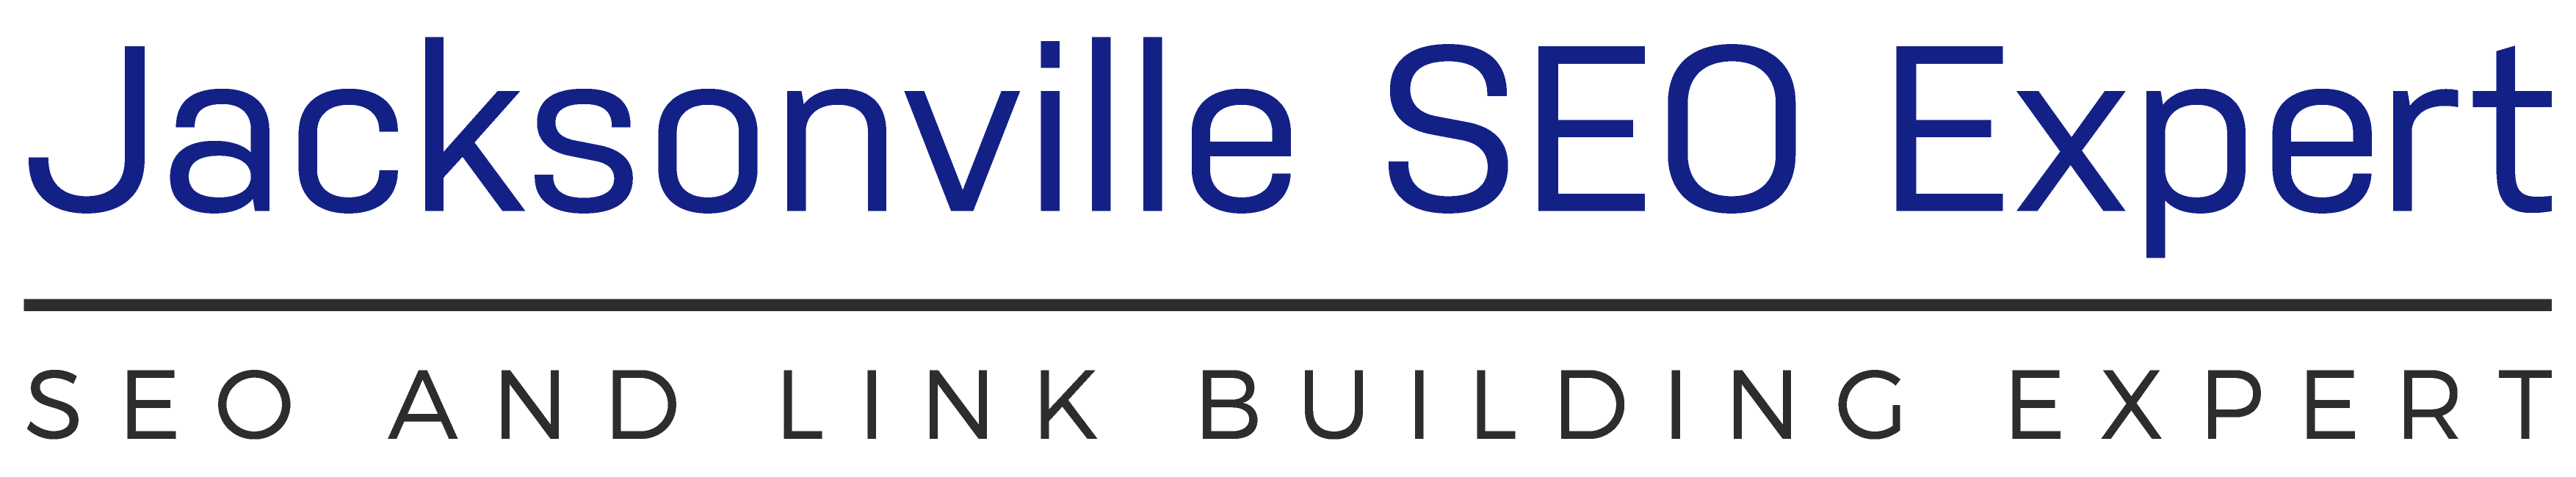 Jacksonville SEO Expert Logo